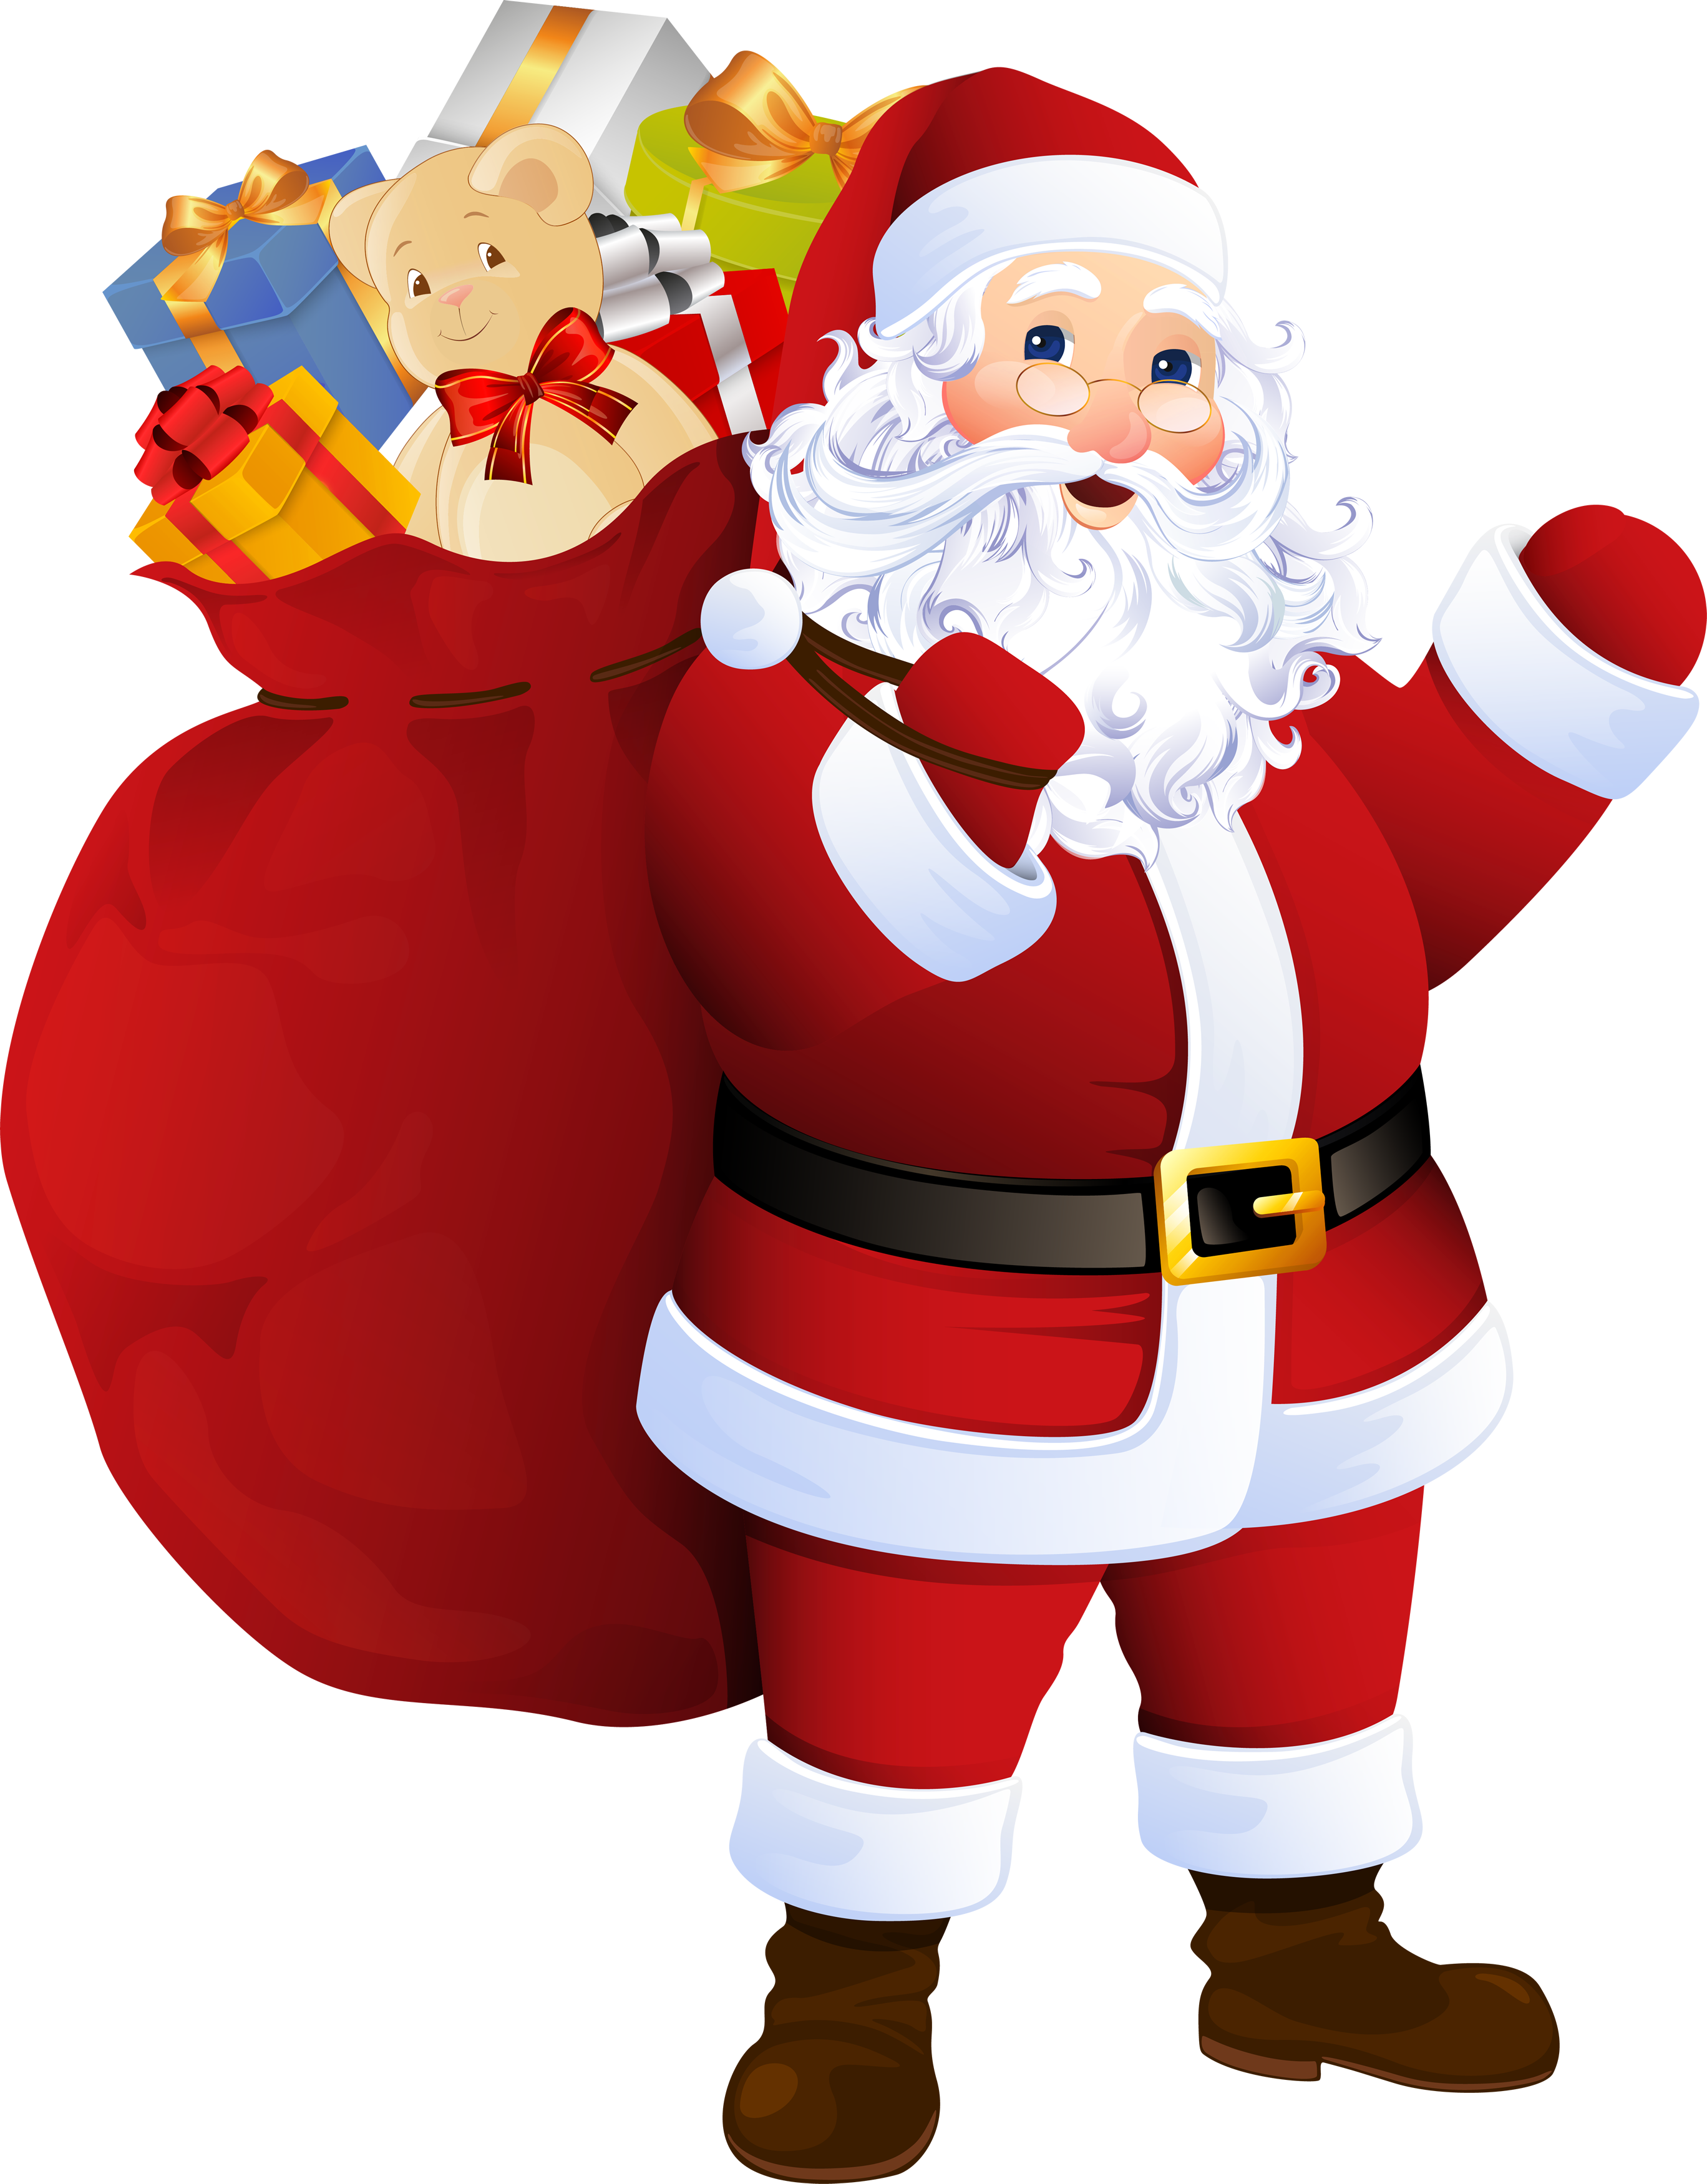 PNG File Name: Santa Claus Pl